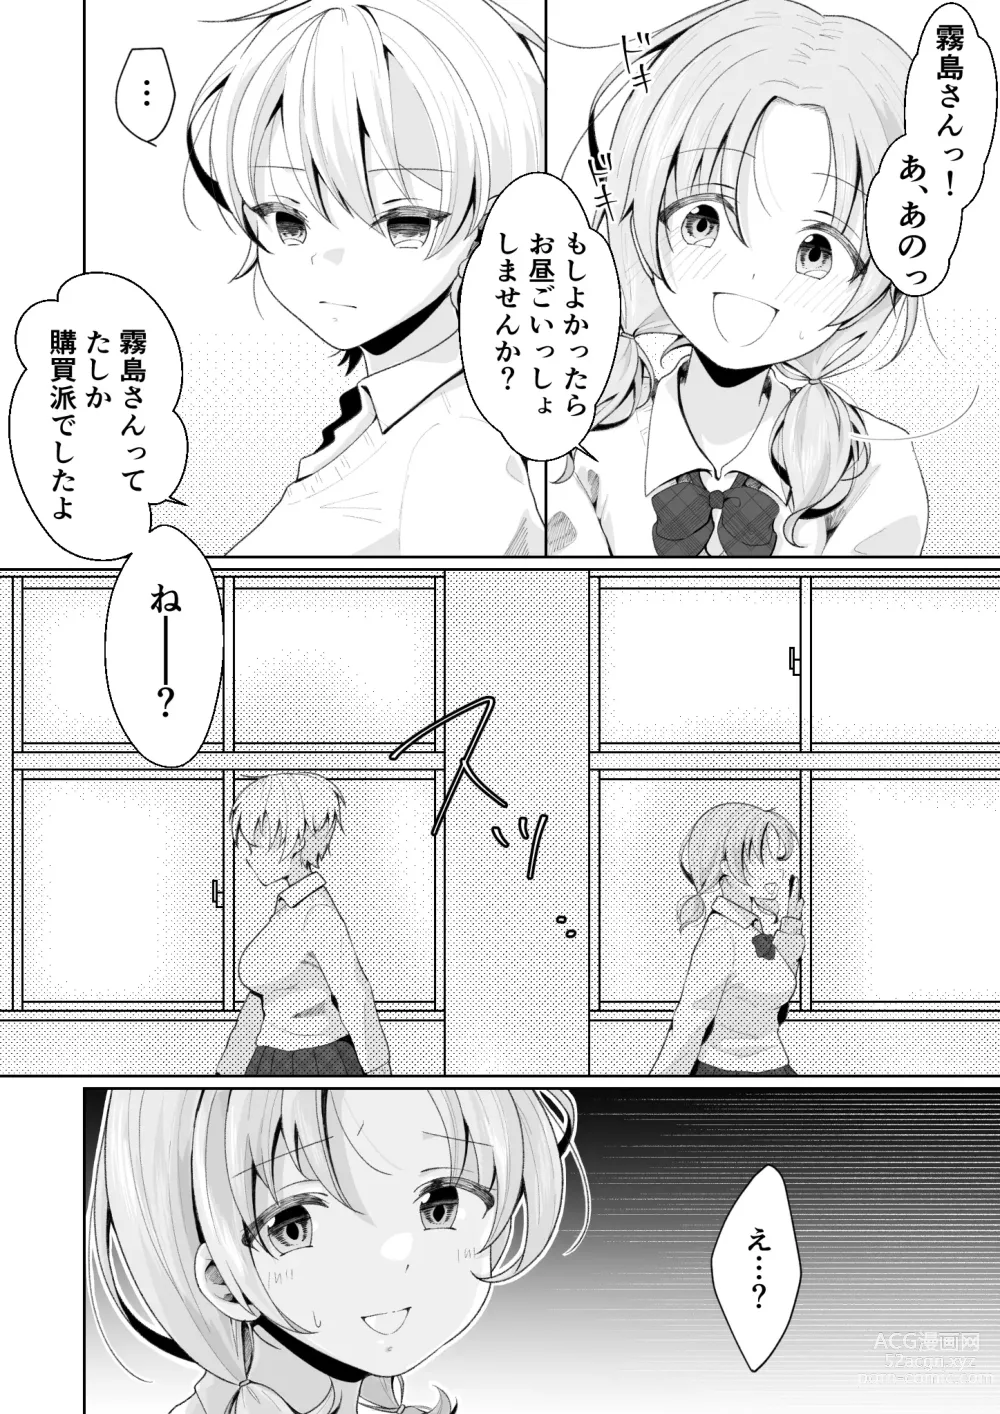 Page 42 of doujinshi TS shita Ore no Shinyuu ga Yandere ni Naru made